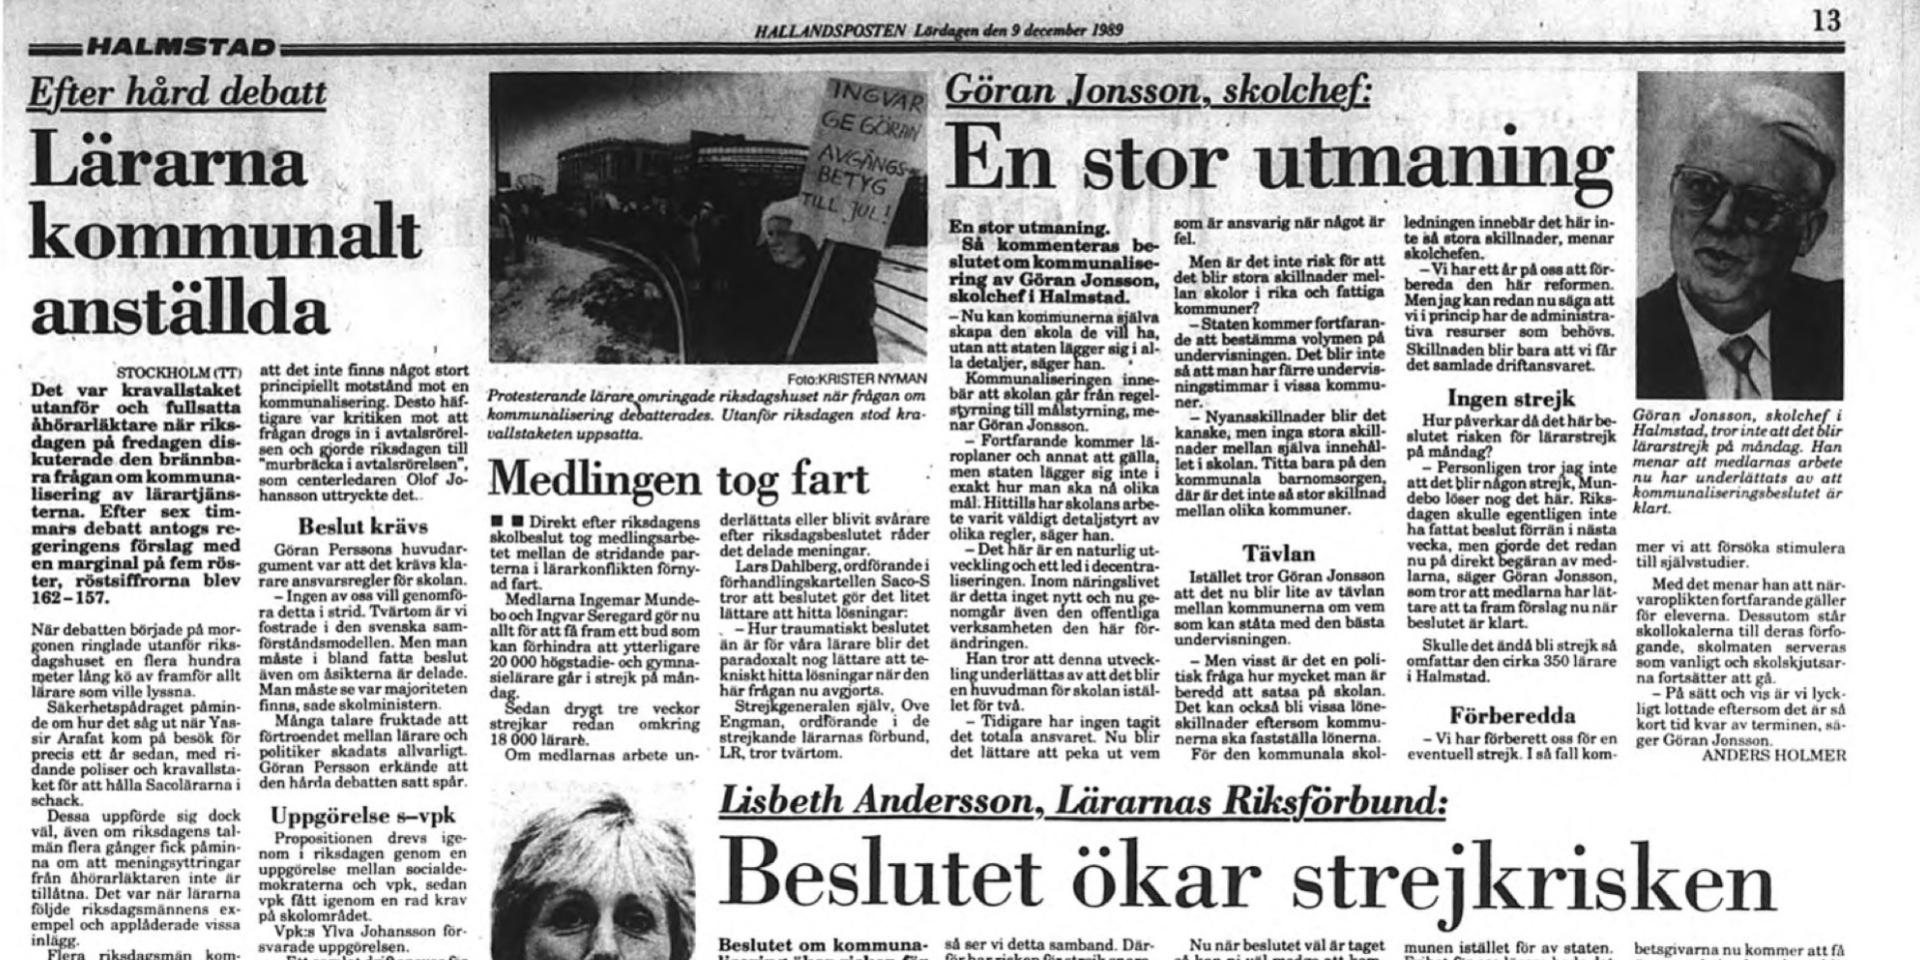 Dagen efter beslutet i riksdagen om att kommunalisera skolan uppmärksammade Hallandsposten beslutet i en rad artiklar.